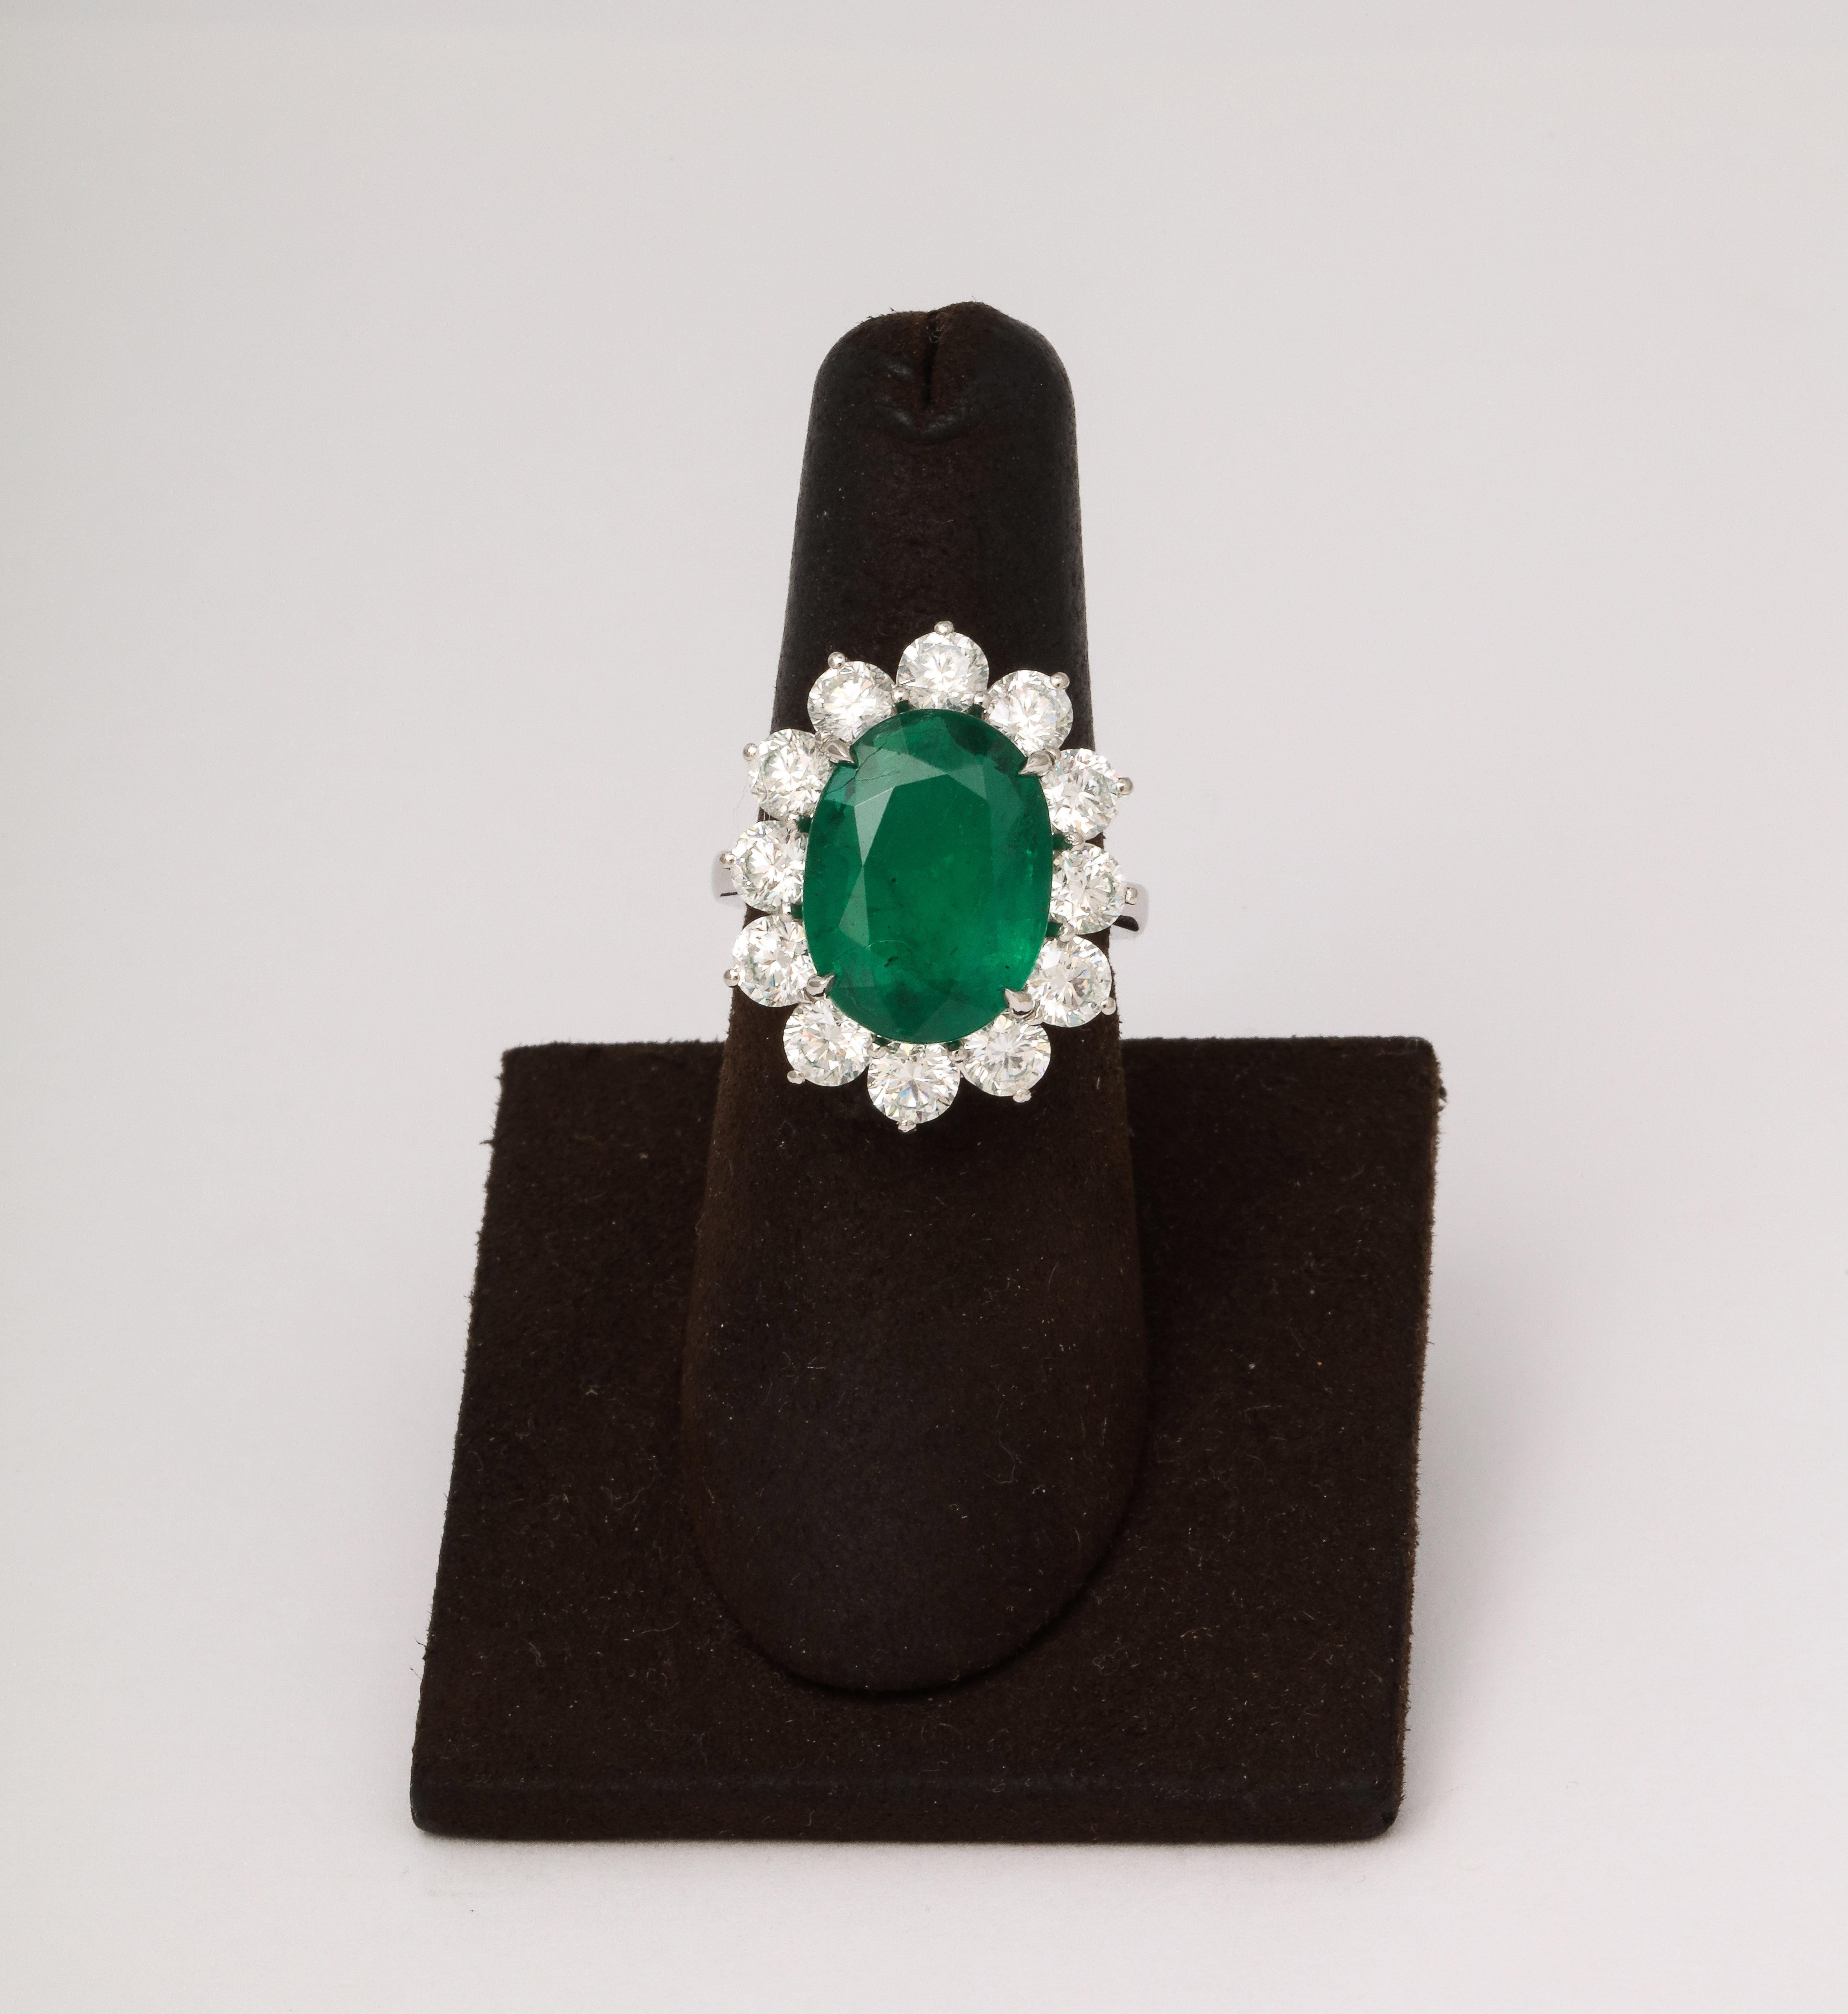 
Ein fabelhafter Cocktailring!

7,45 Karat zertifizierter ovaler Smaragd in intensivem Grün 

3,30 Karat runde Diamanten im Brillantschliff 

In Platin gefasst 

Größe 6,25 - dieser Ring kann leicht auf jede Fingergröße angepasst werden.